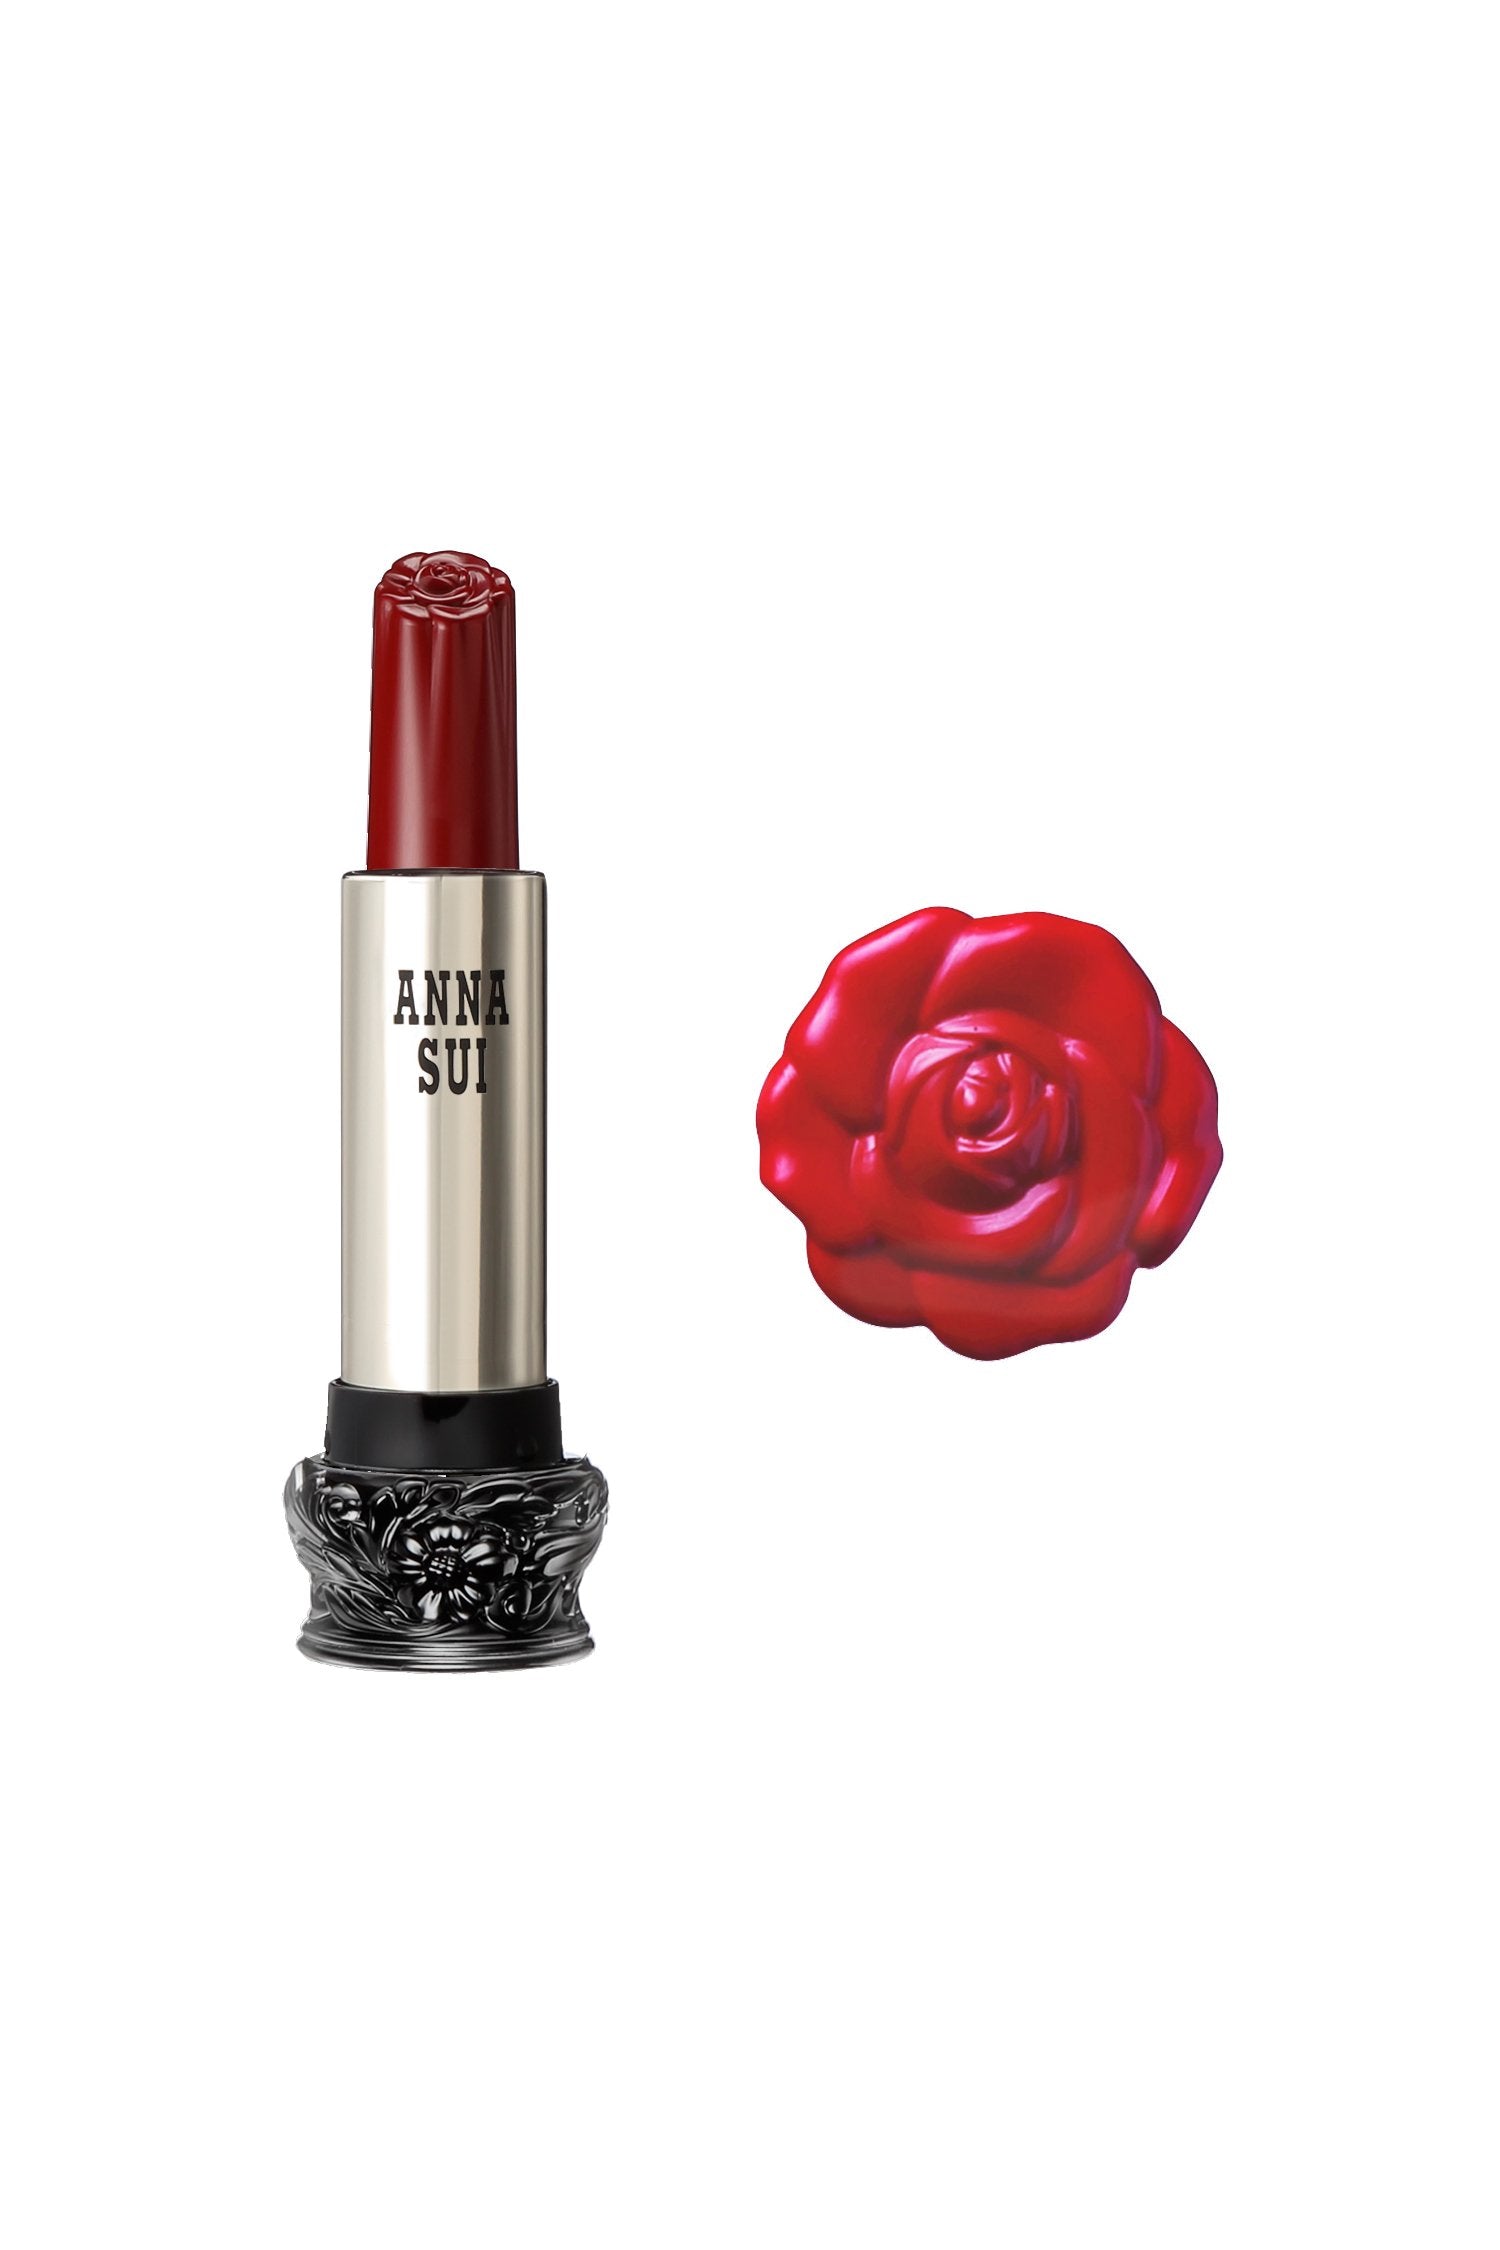 400 - 安娜玫瑰紅色唇膏 F： 仙女花， 在一個圓柱形容器， 大黑色底座， 雕刻花卉設計， 金屬身體